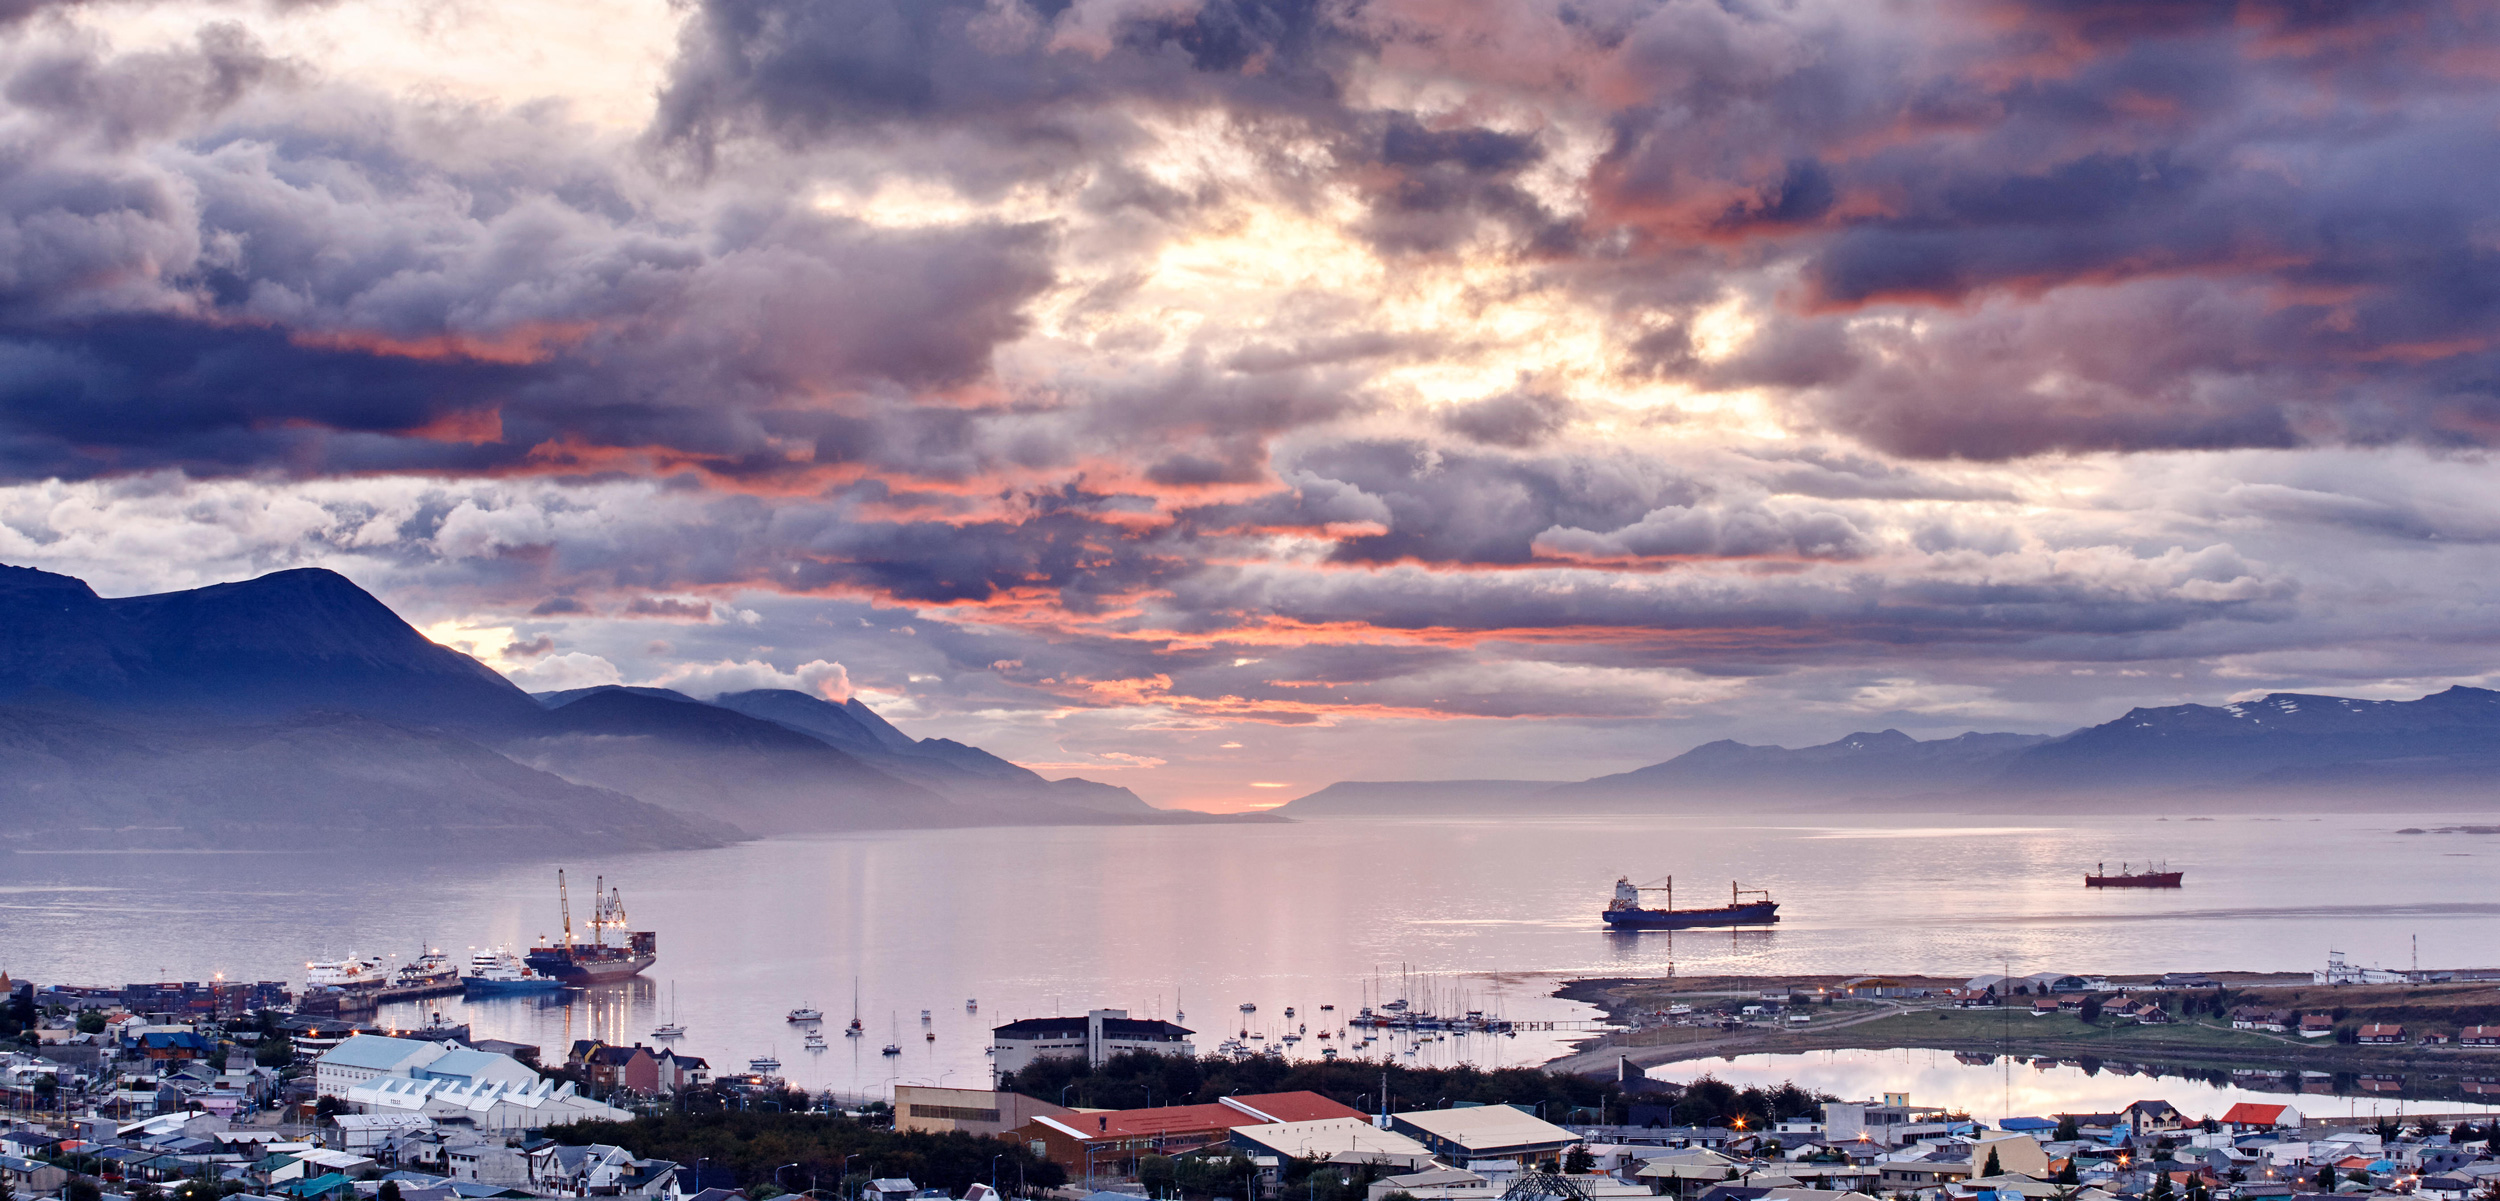 Port of Ushuaia, Tierra del Fuego, Argentina